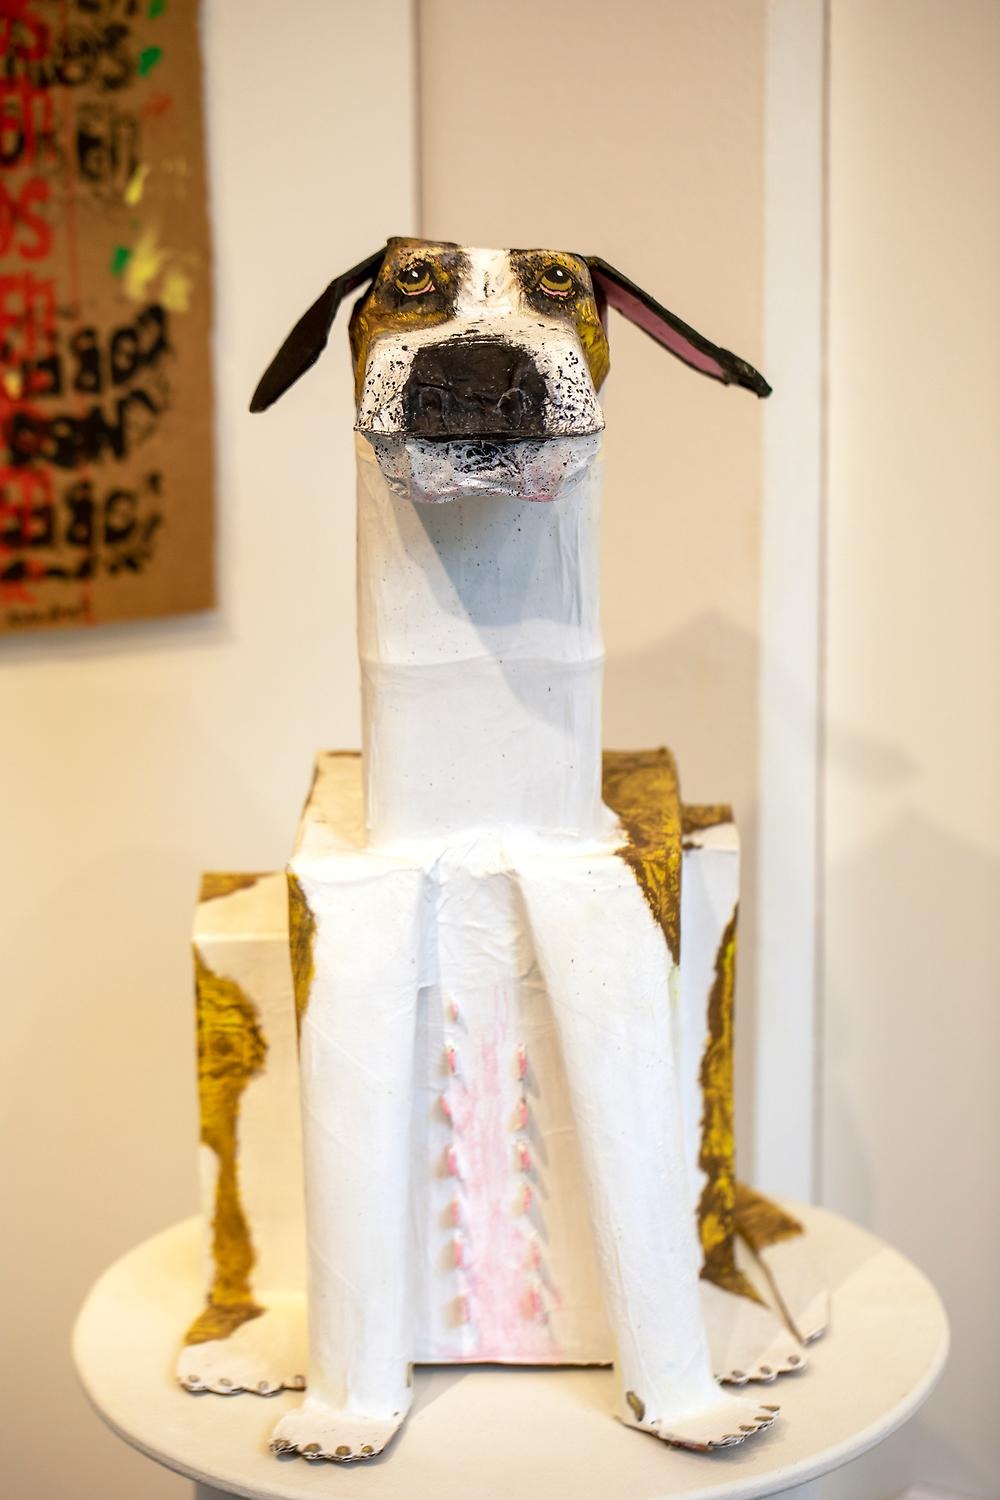 En skulptur. Skulpturen föreställer en hund. Den är gjord av toarullar, kartong och är målad vit och brun. 